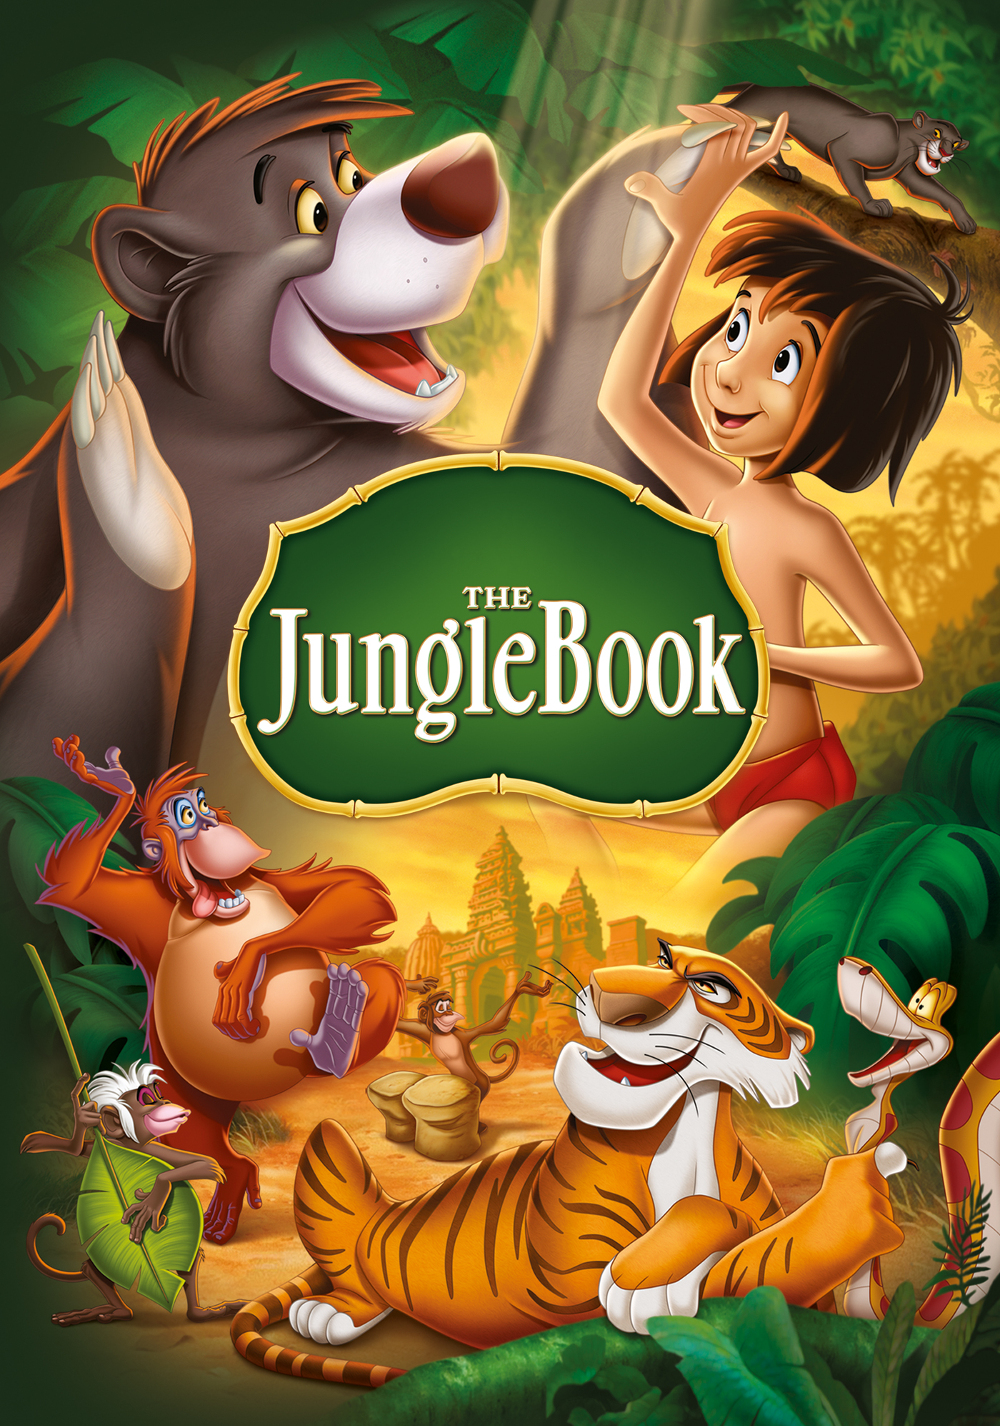 The Jungle Book (1967) Art